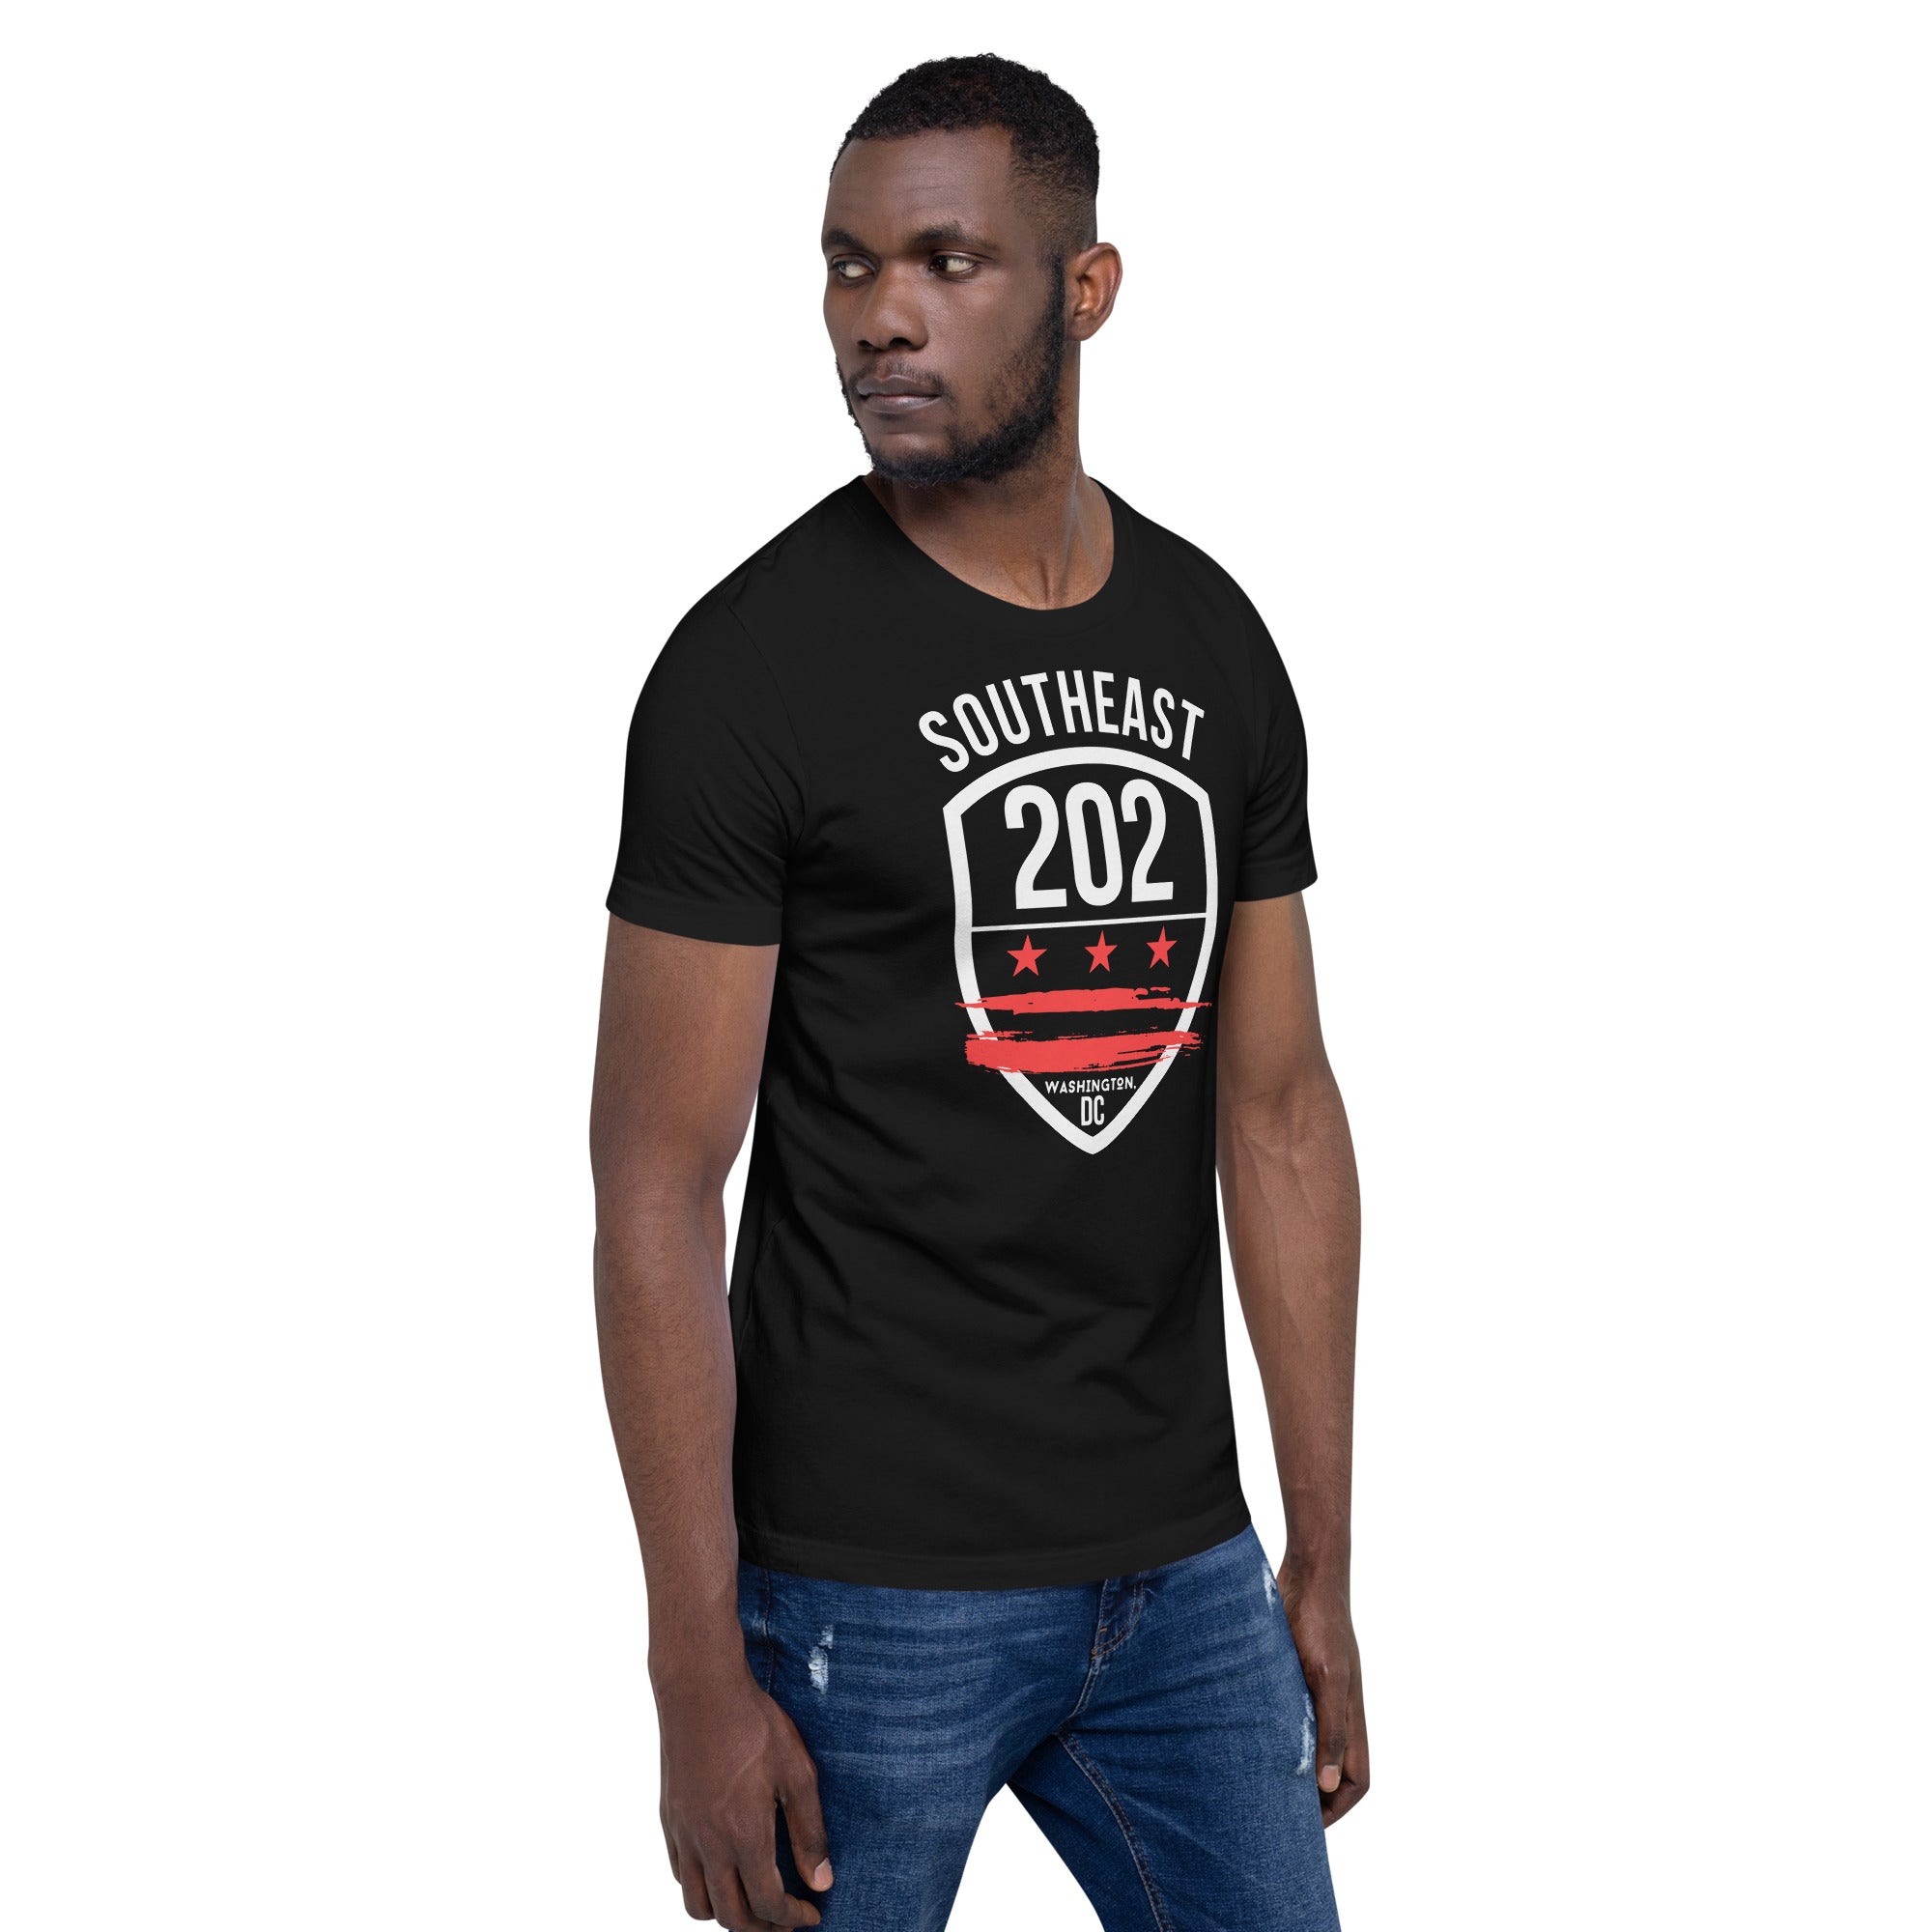 Southeast DC /202 (Emblem Front Only)- Black Unisex t-shirt